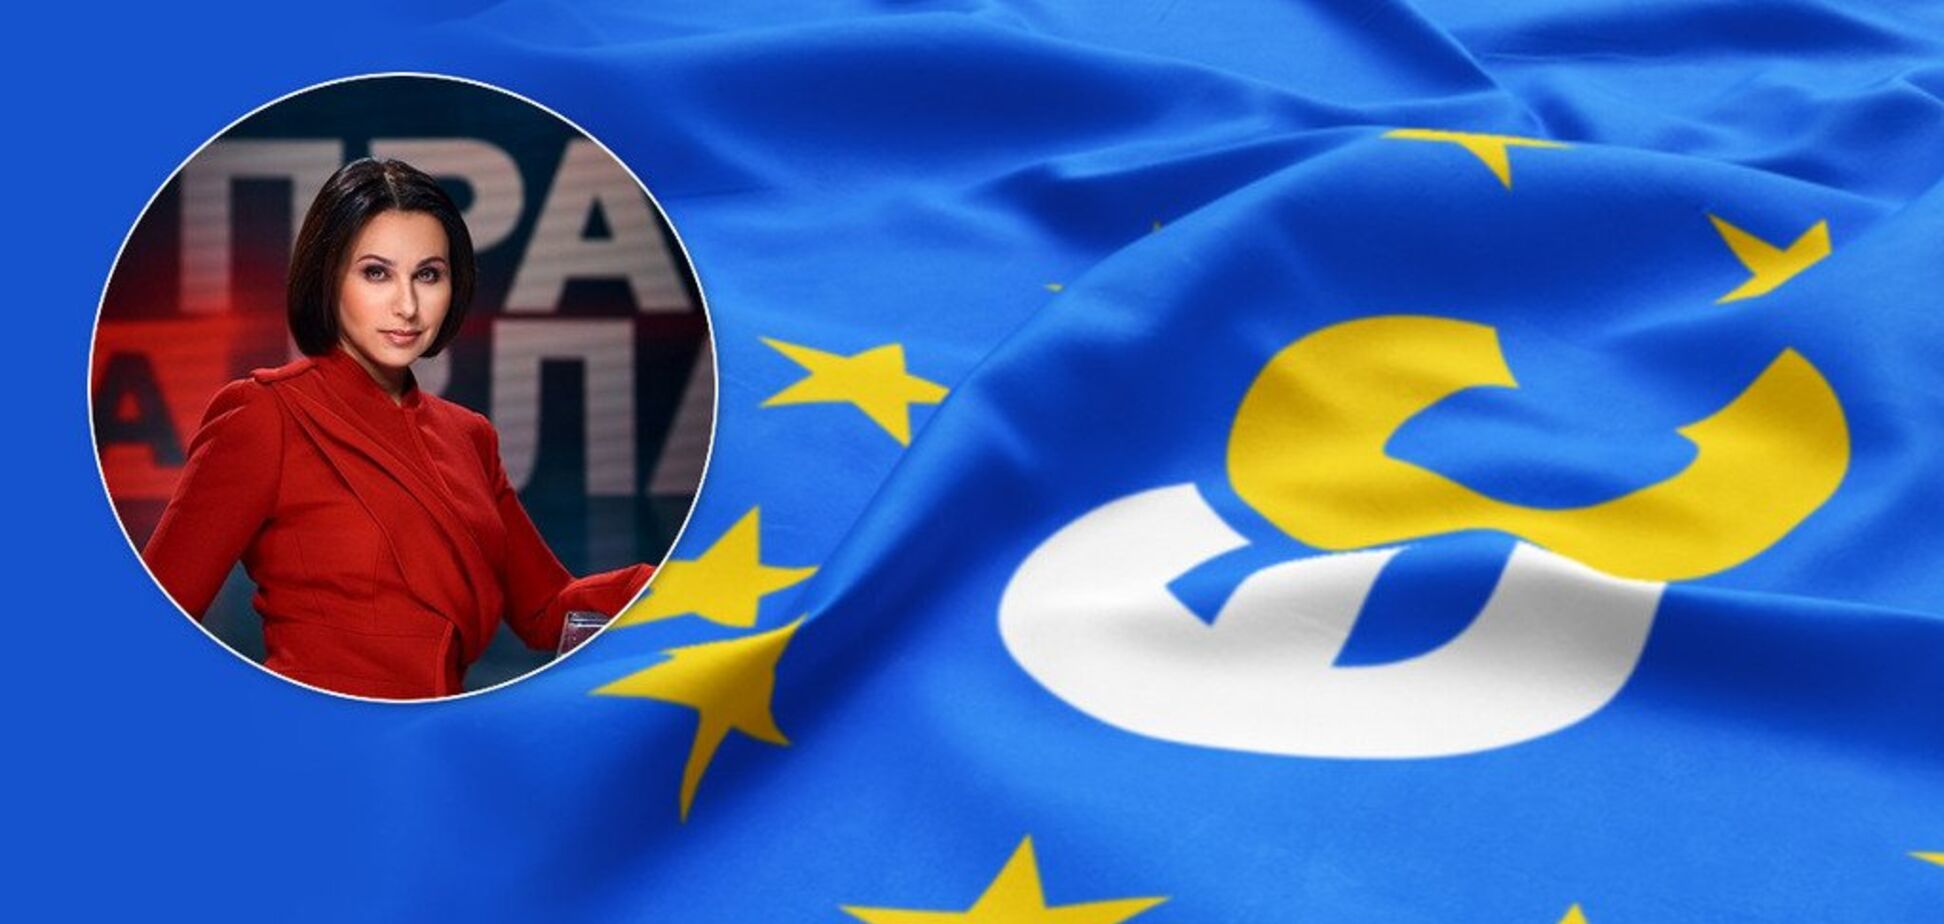 'ЕС' обвинила известный телеканал в ангажированности: в чем дело